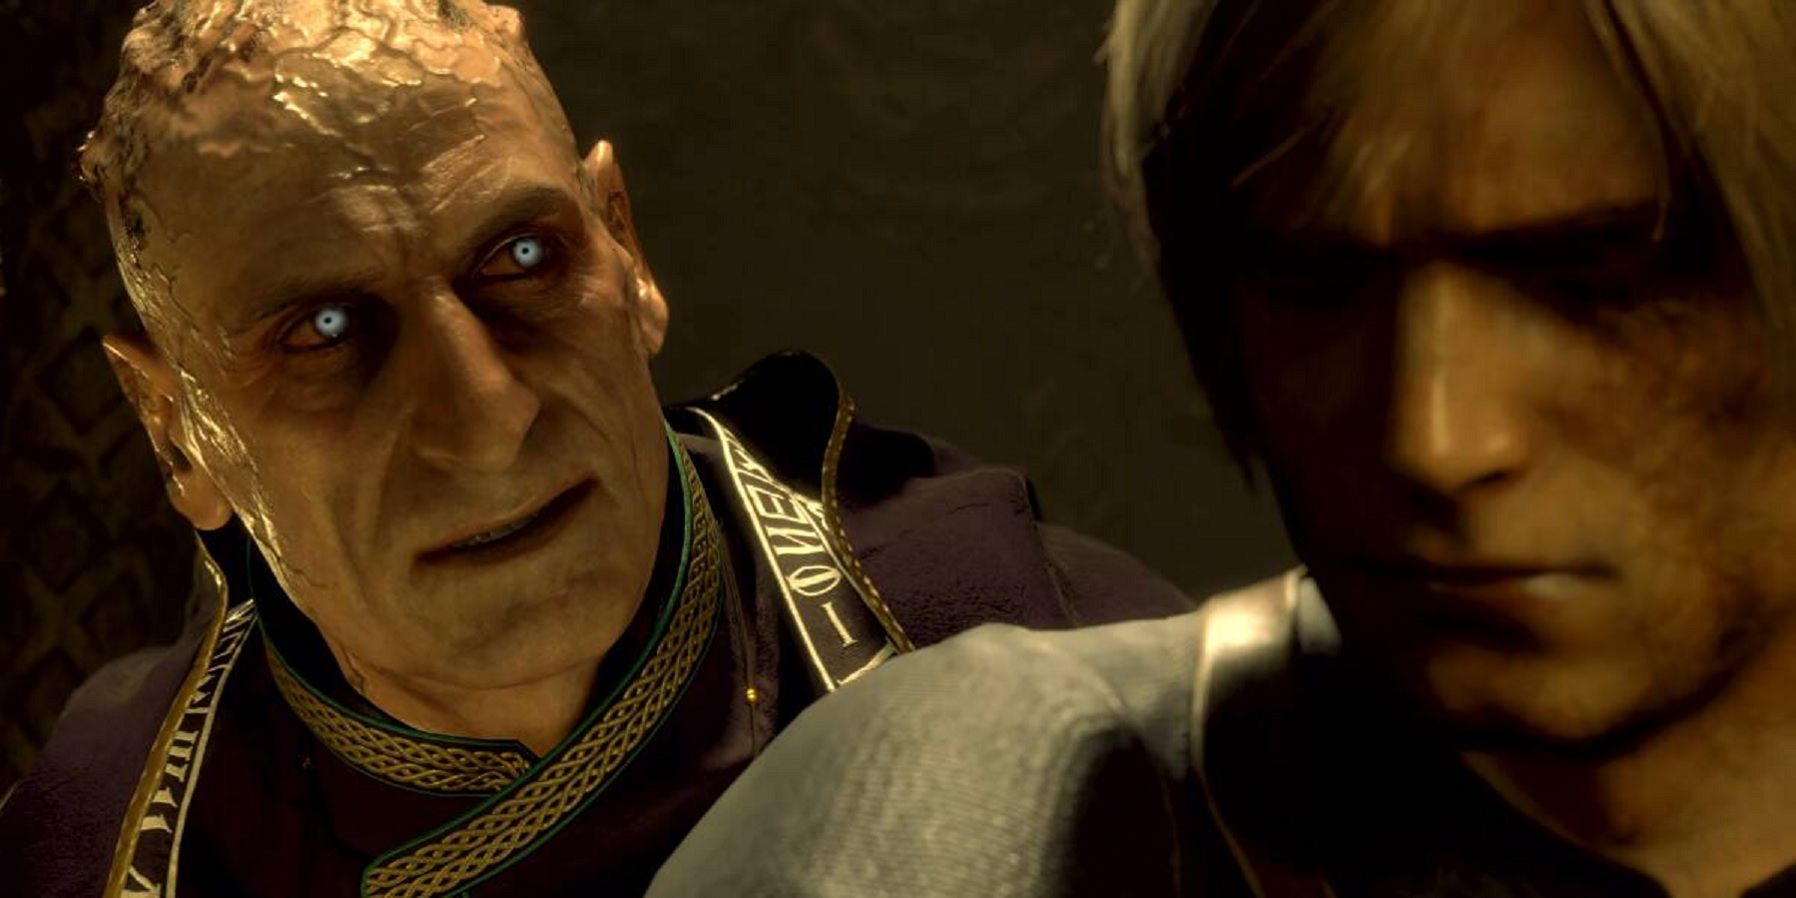 Resident Evil 4 Remake trailer showing Saddler standing behind Leon